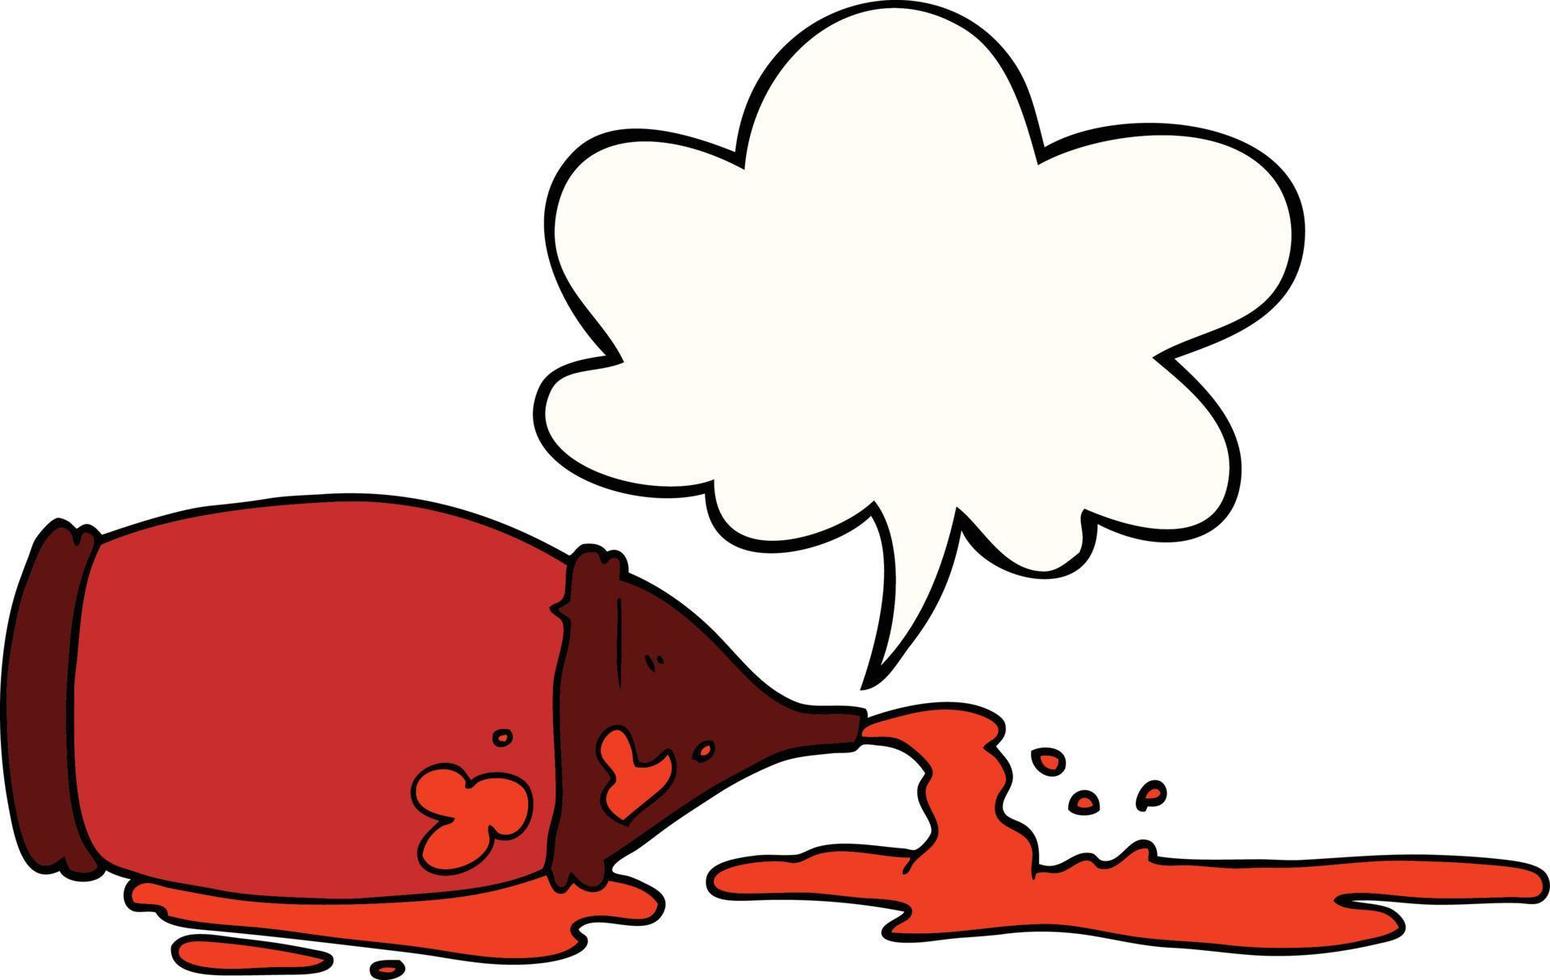 cartoon spilled ketchup bottle and speech bubble vector